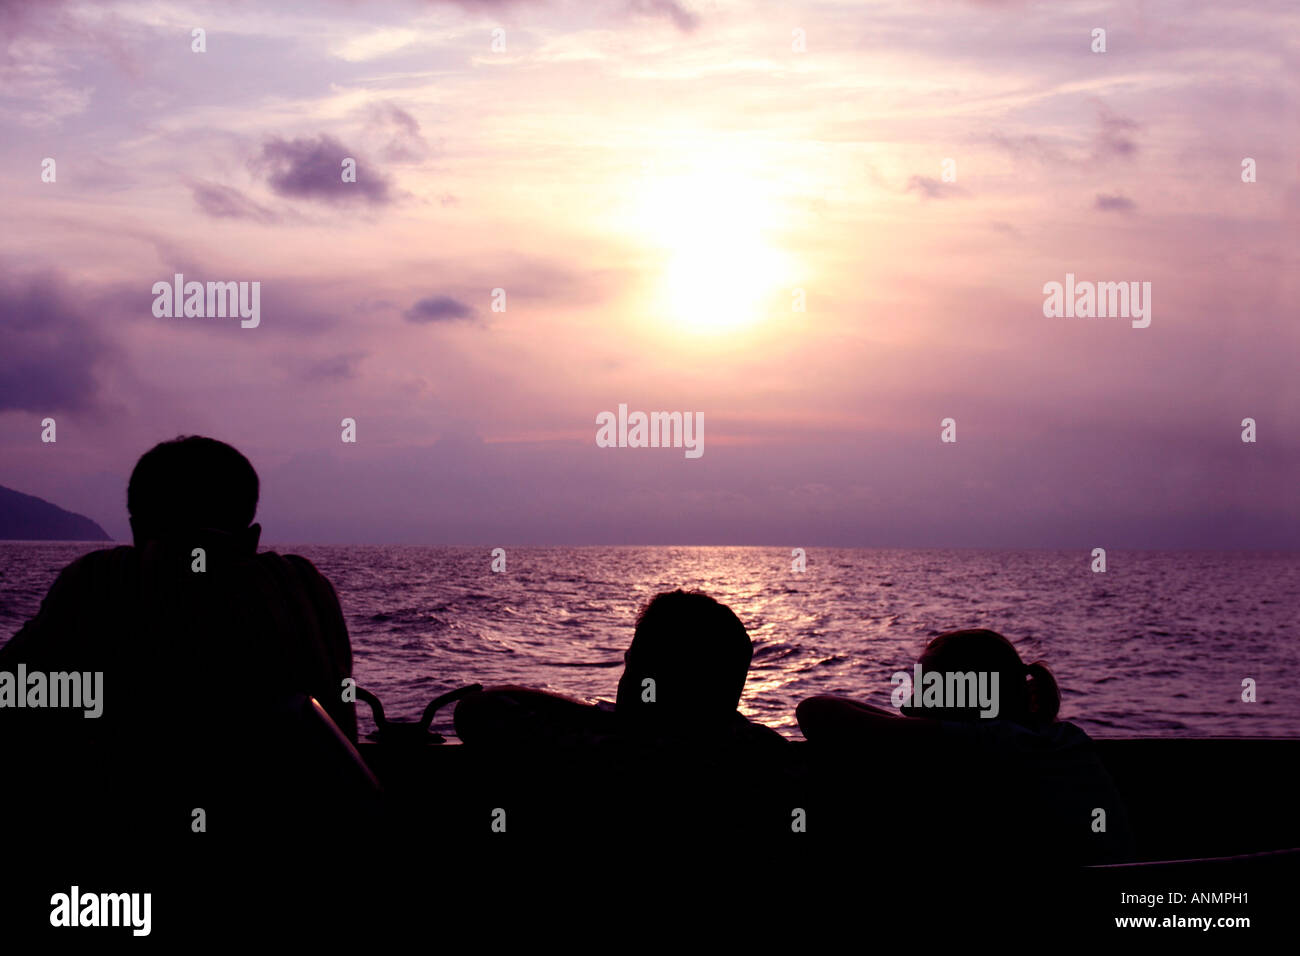 Silhouette di due uomini e una donna a guardare il mare delle Andamane e la regolazione del sole nel cielo da una nave Foto Stock